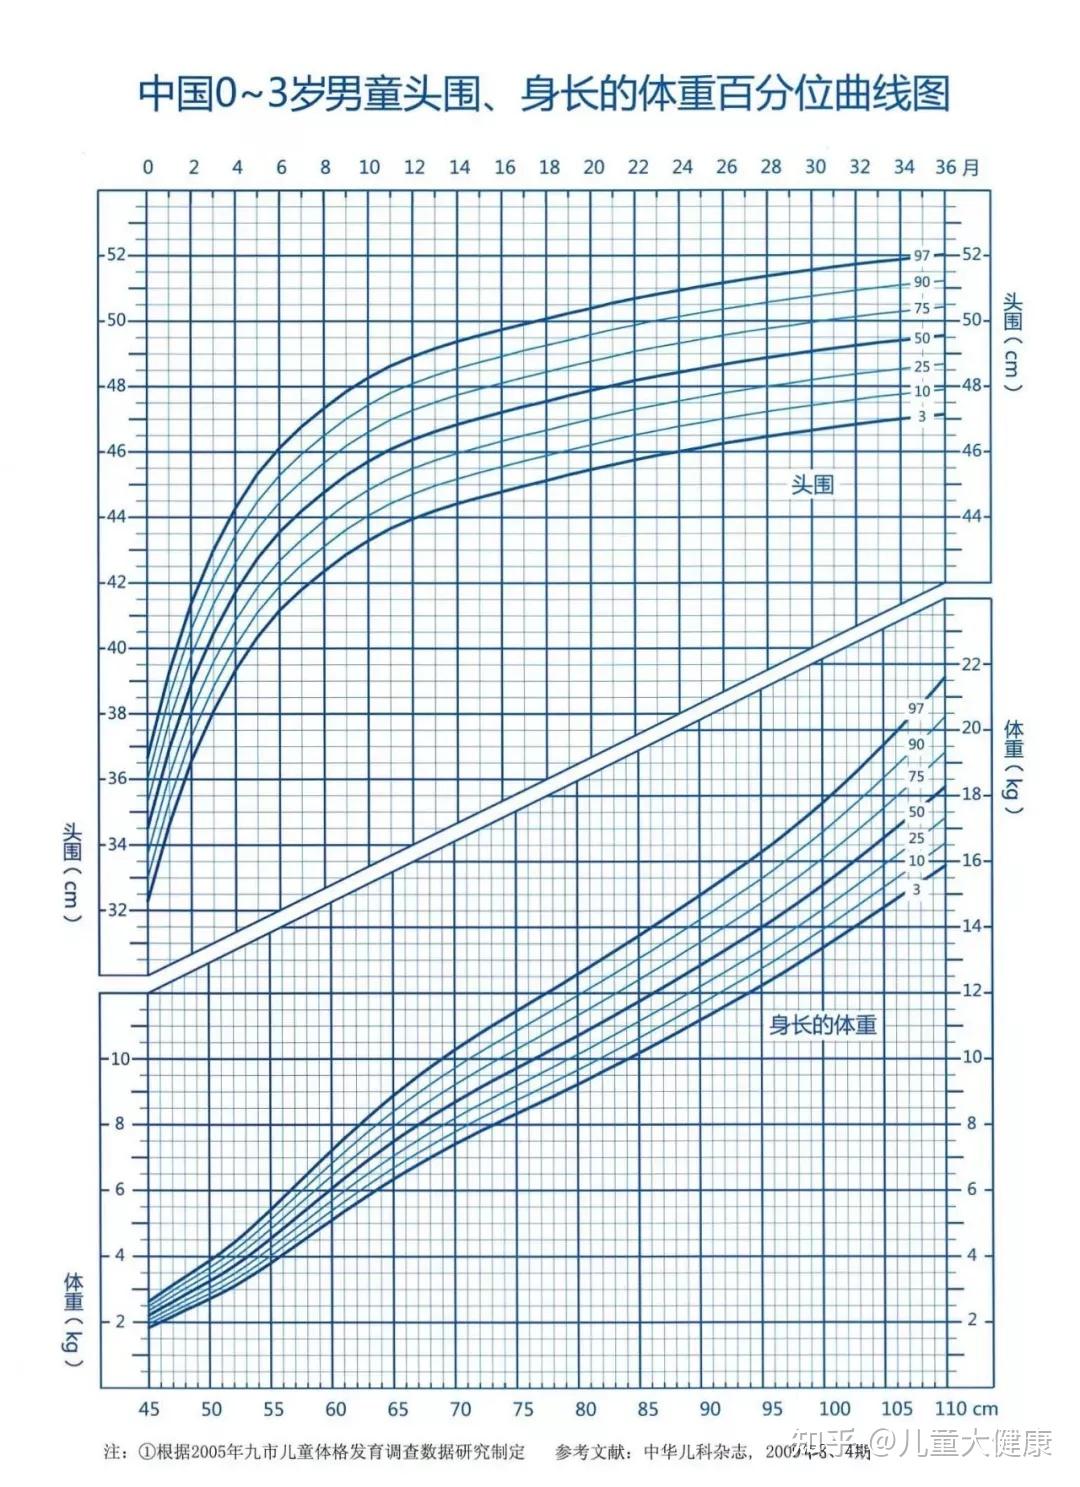 中国儿童018岁生长发育百分位曲线图